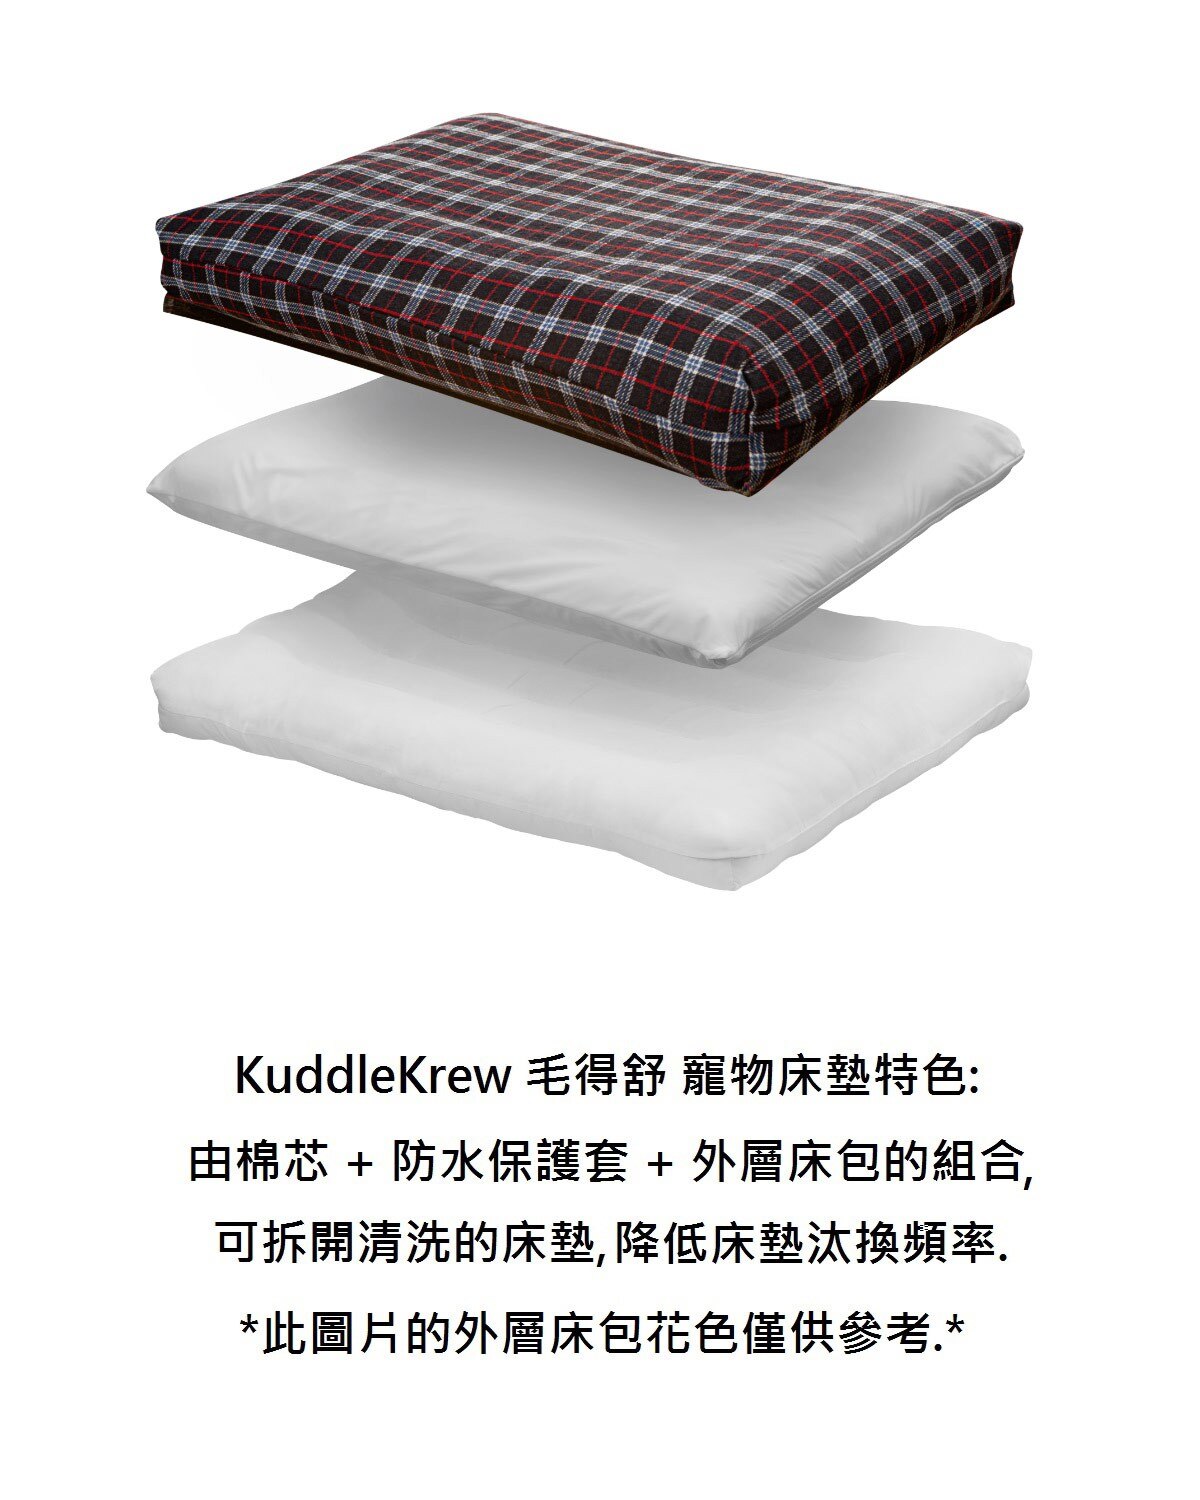 KuddleKrew 毛得舒 寵物床墊，搭配醫療等級的防水保護套，降低床墊的汙染，增加清洗的便利性，防水保護套有100％的防水透氣效果。